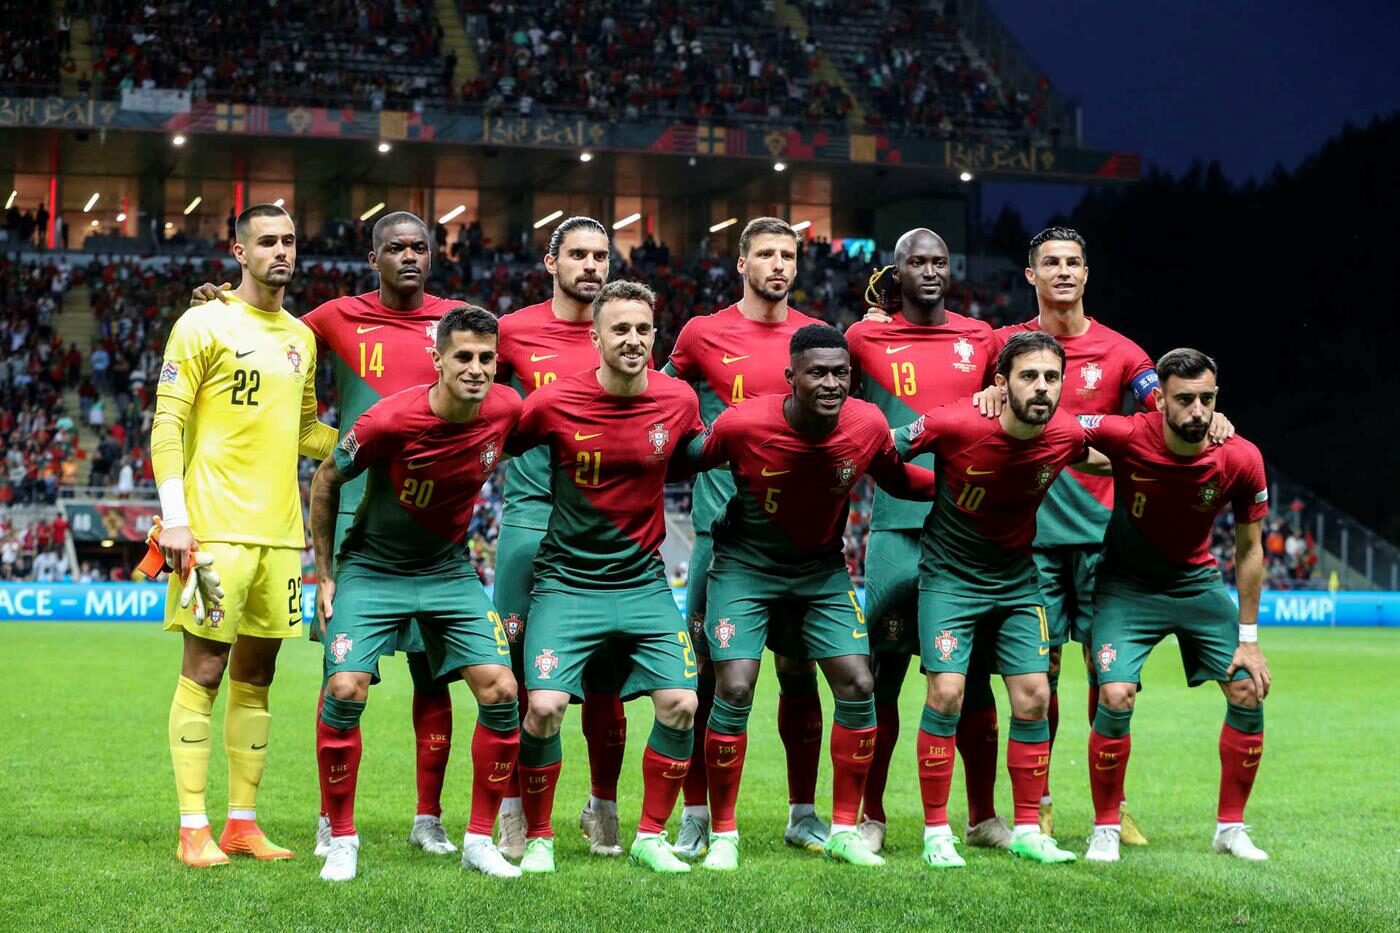 Federação promove próximo jogo de Portugal com fotografia de